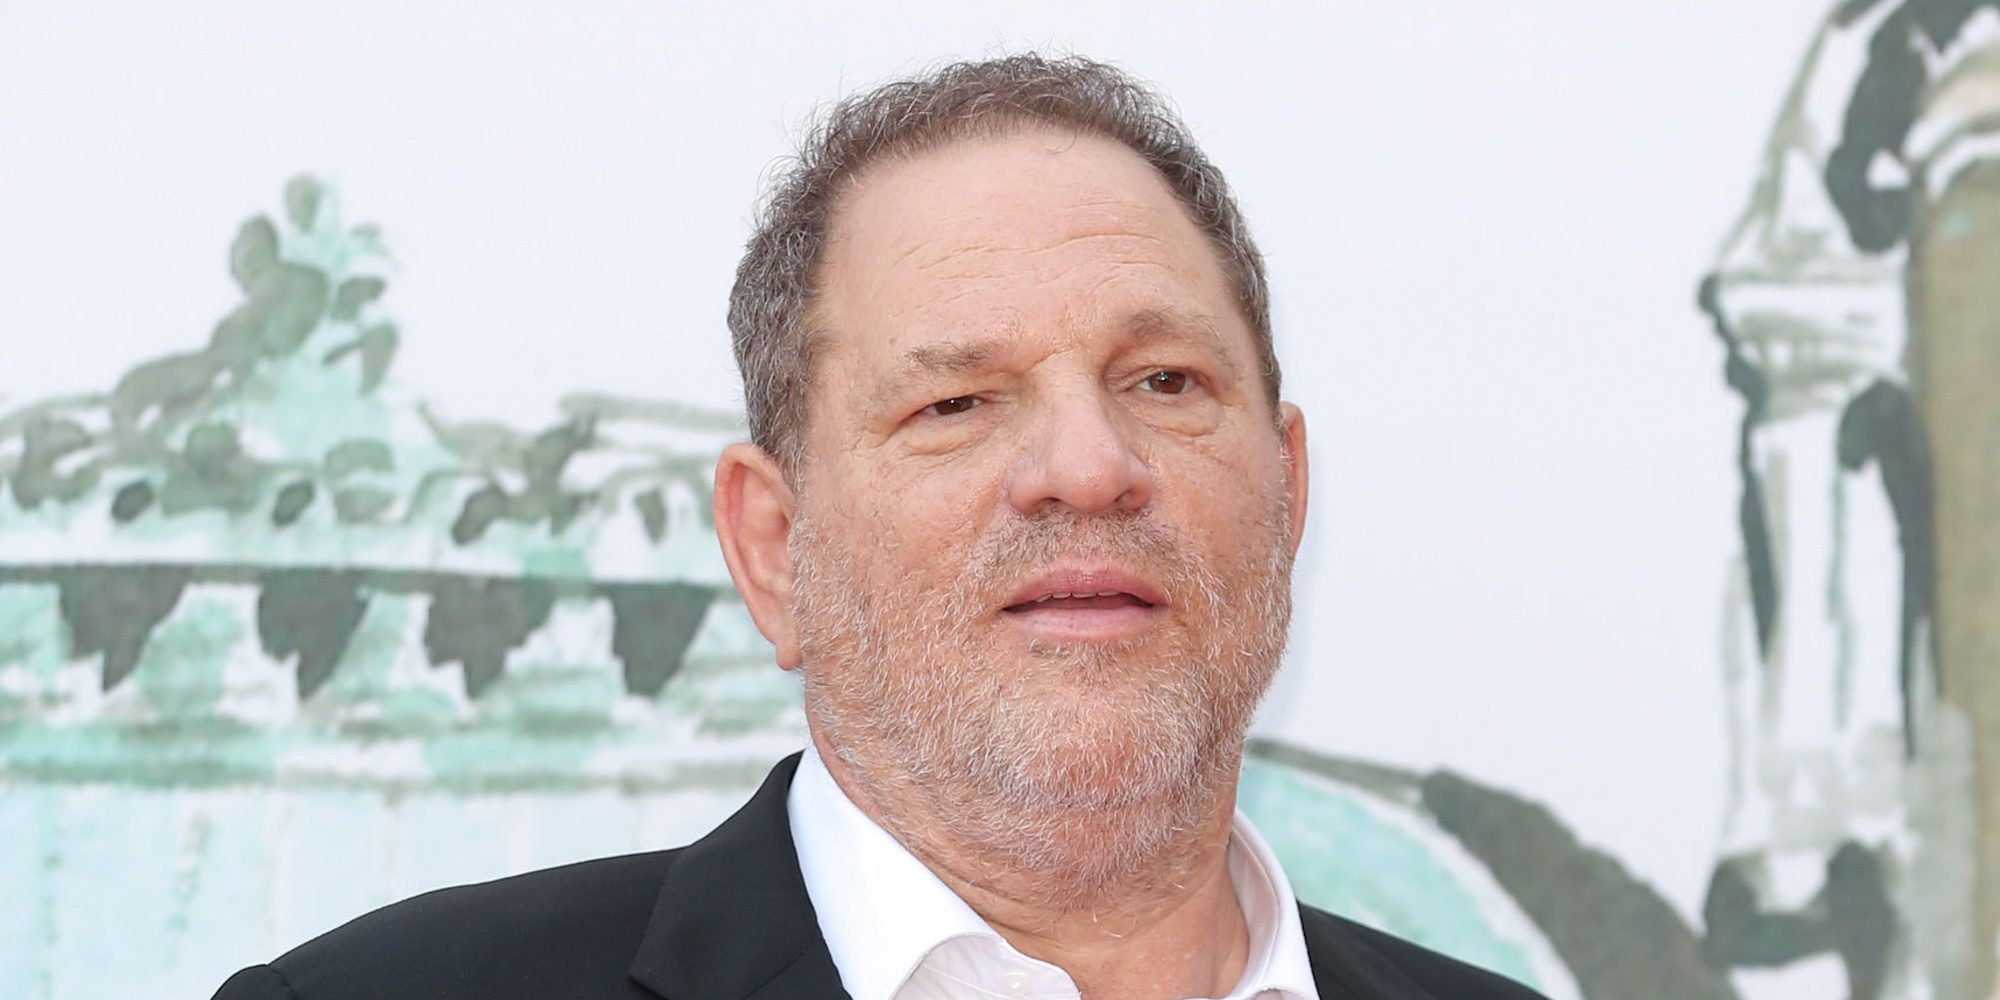 La Academia de cine de Hollywood expulsa a Harvey Weinstein por unanimidad tras su escándalo por acoso sexual